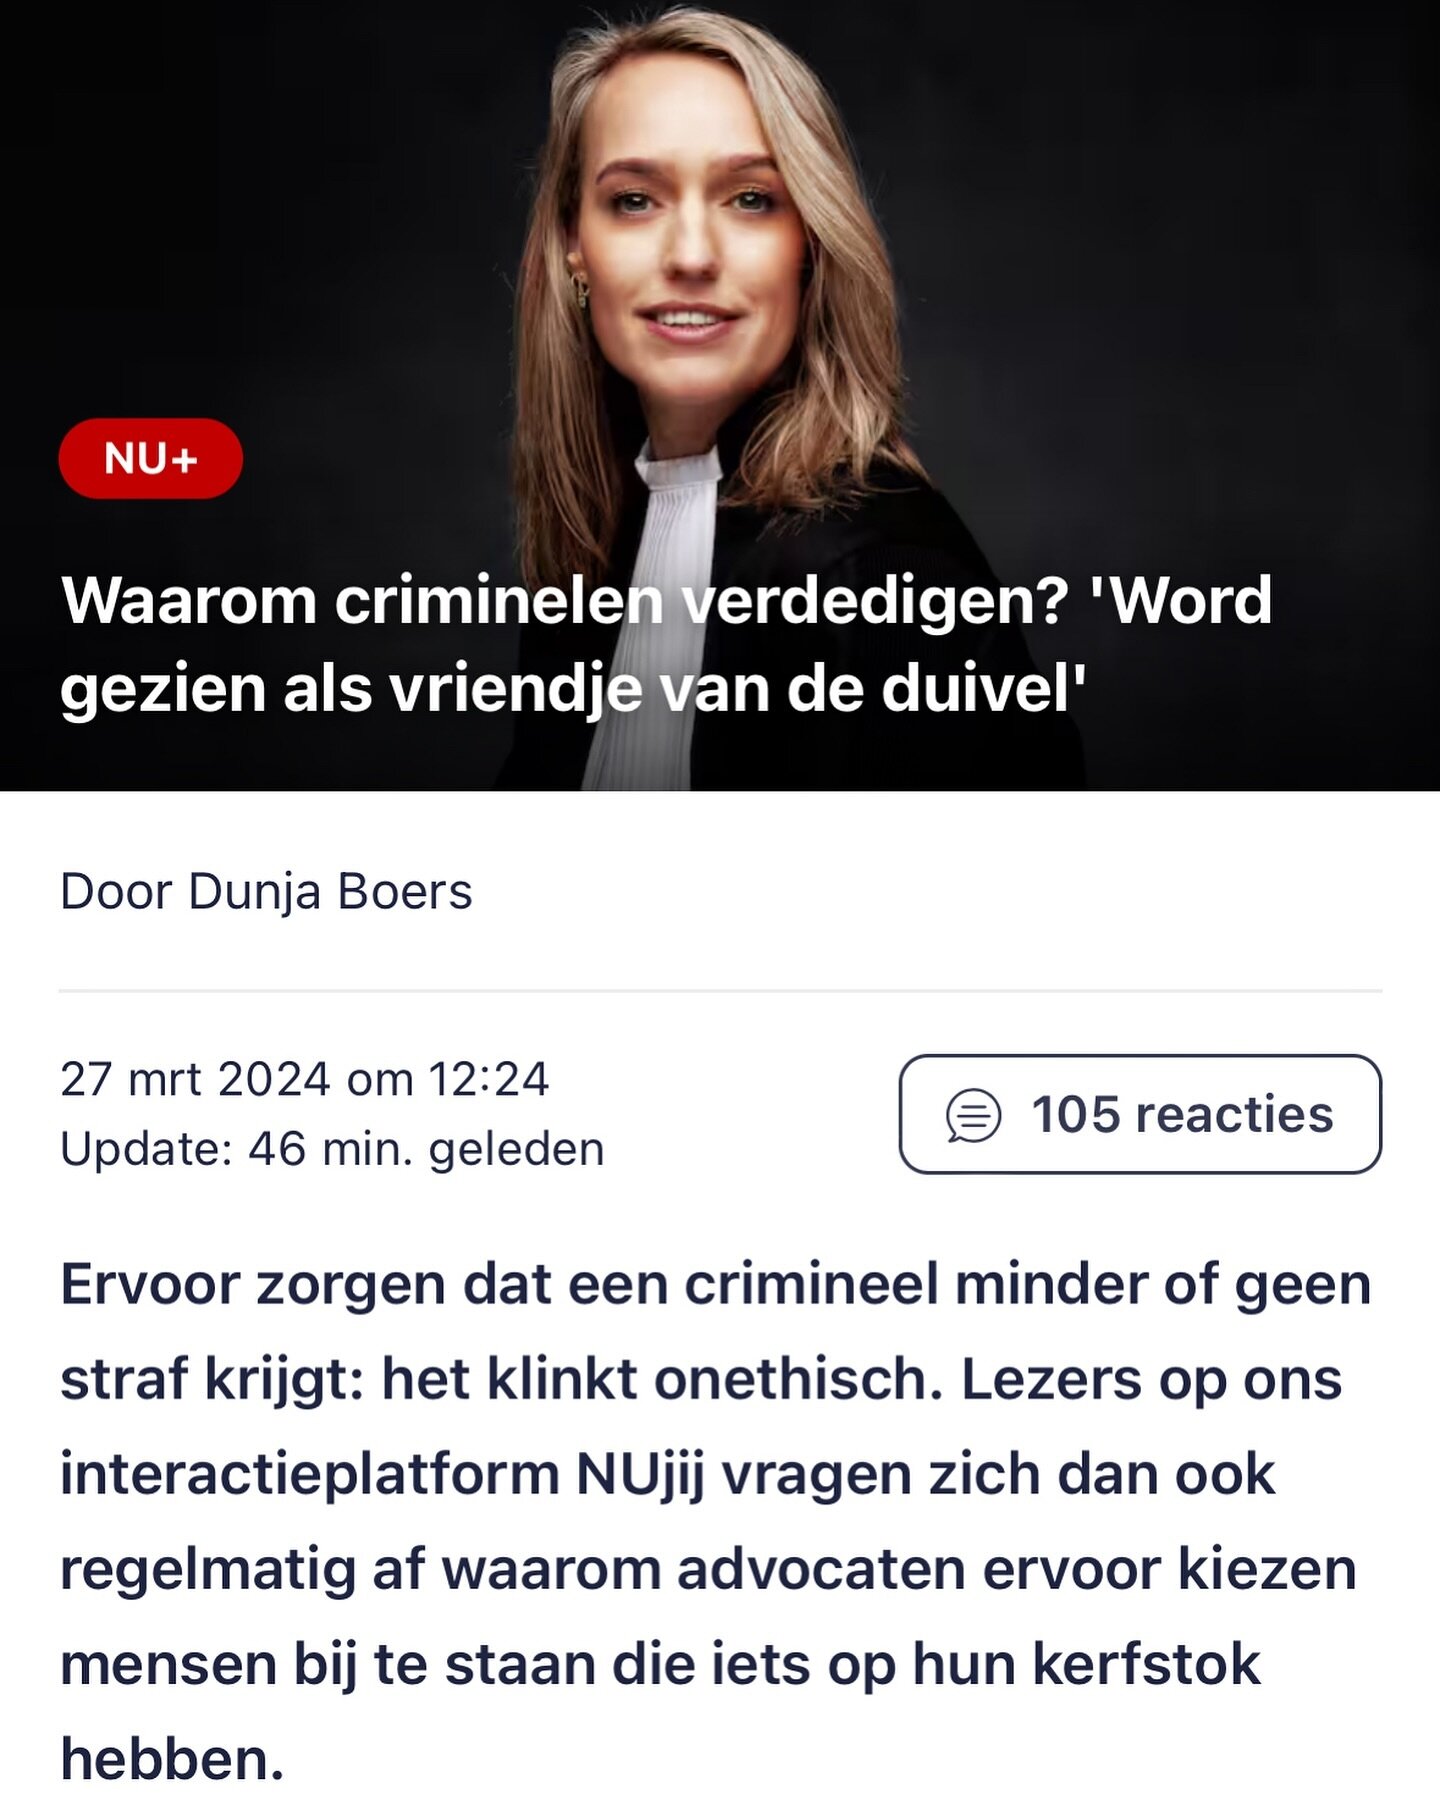 Vandaag op Nu.nl. Antwoord op de vraag der vragen 🥰

https://www.nu.nl/gebaseerd-op-jullie-vragen/6306675/waarom-criminelen-verdedigen-word-gezien-als-vriendje-van-de-duivel.html 

#interview #strafrecht #advocaat #faq #vraagdervragen #vriendjevande